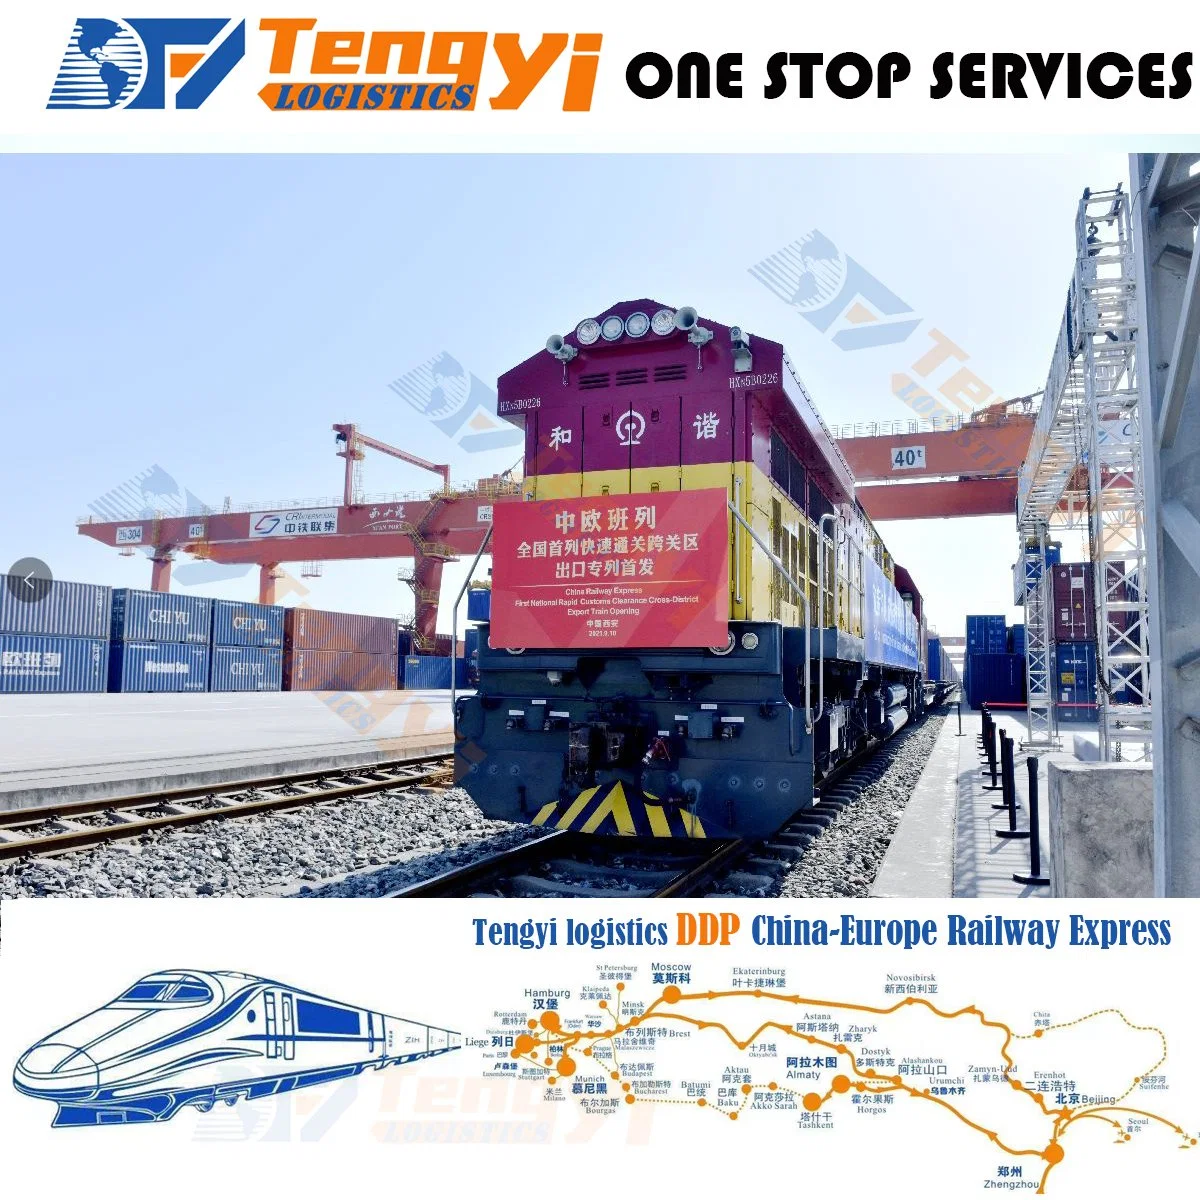 International Freight Forwarding Finlândia Hungria Roménia ferroviário europeu de recolha e a Entrega